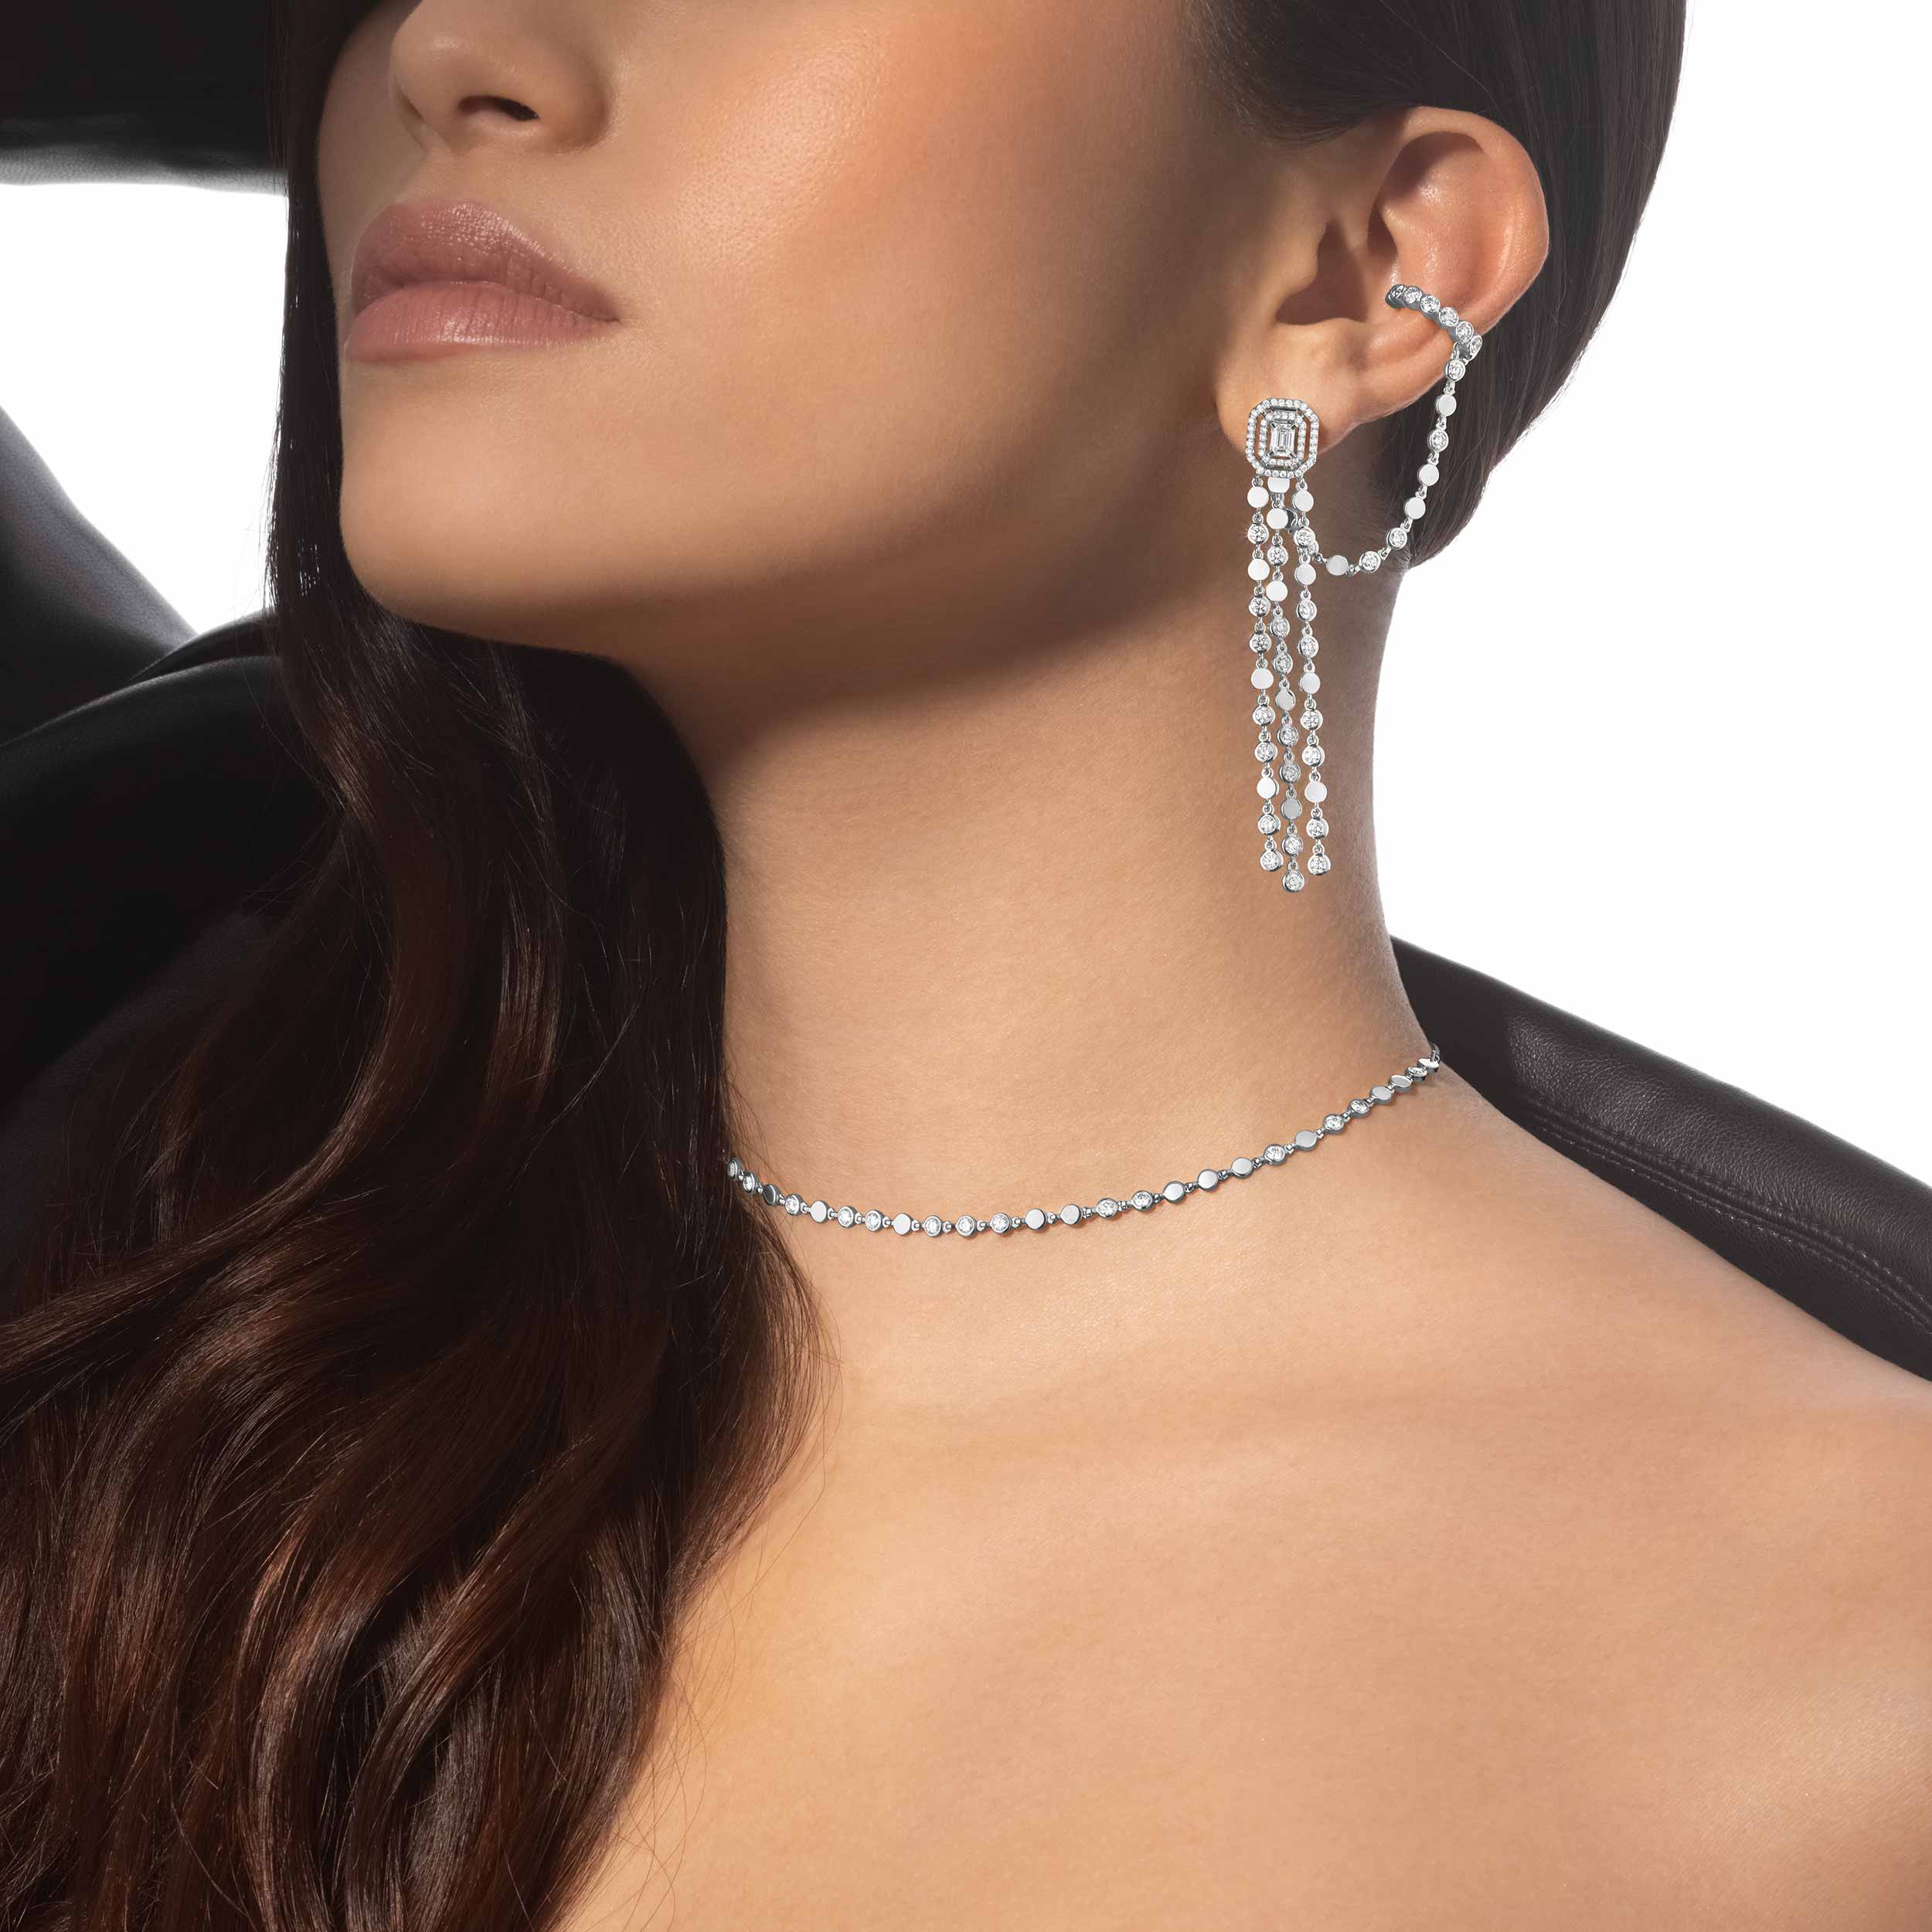 D-Vibes Multi-Row earrings White Gold For Her Diamond Earrings 12432-WG